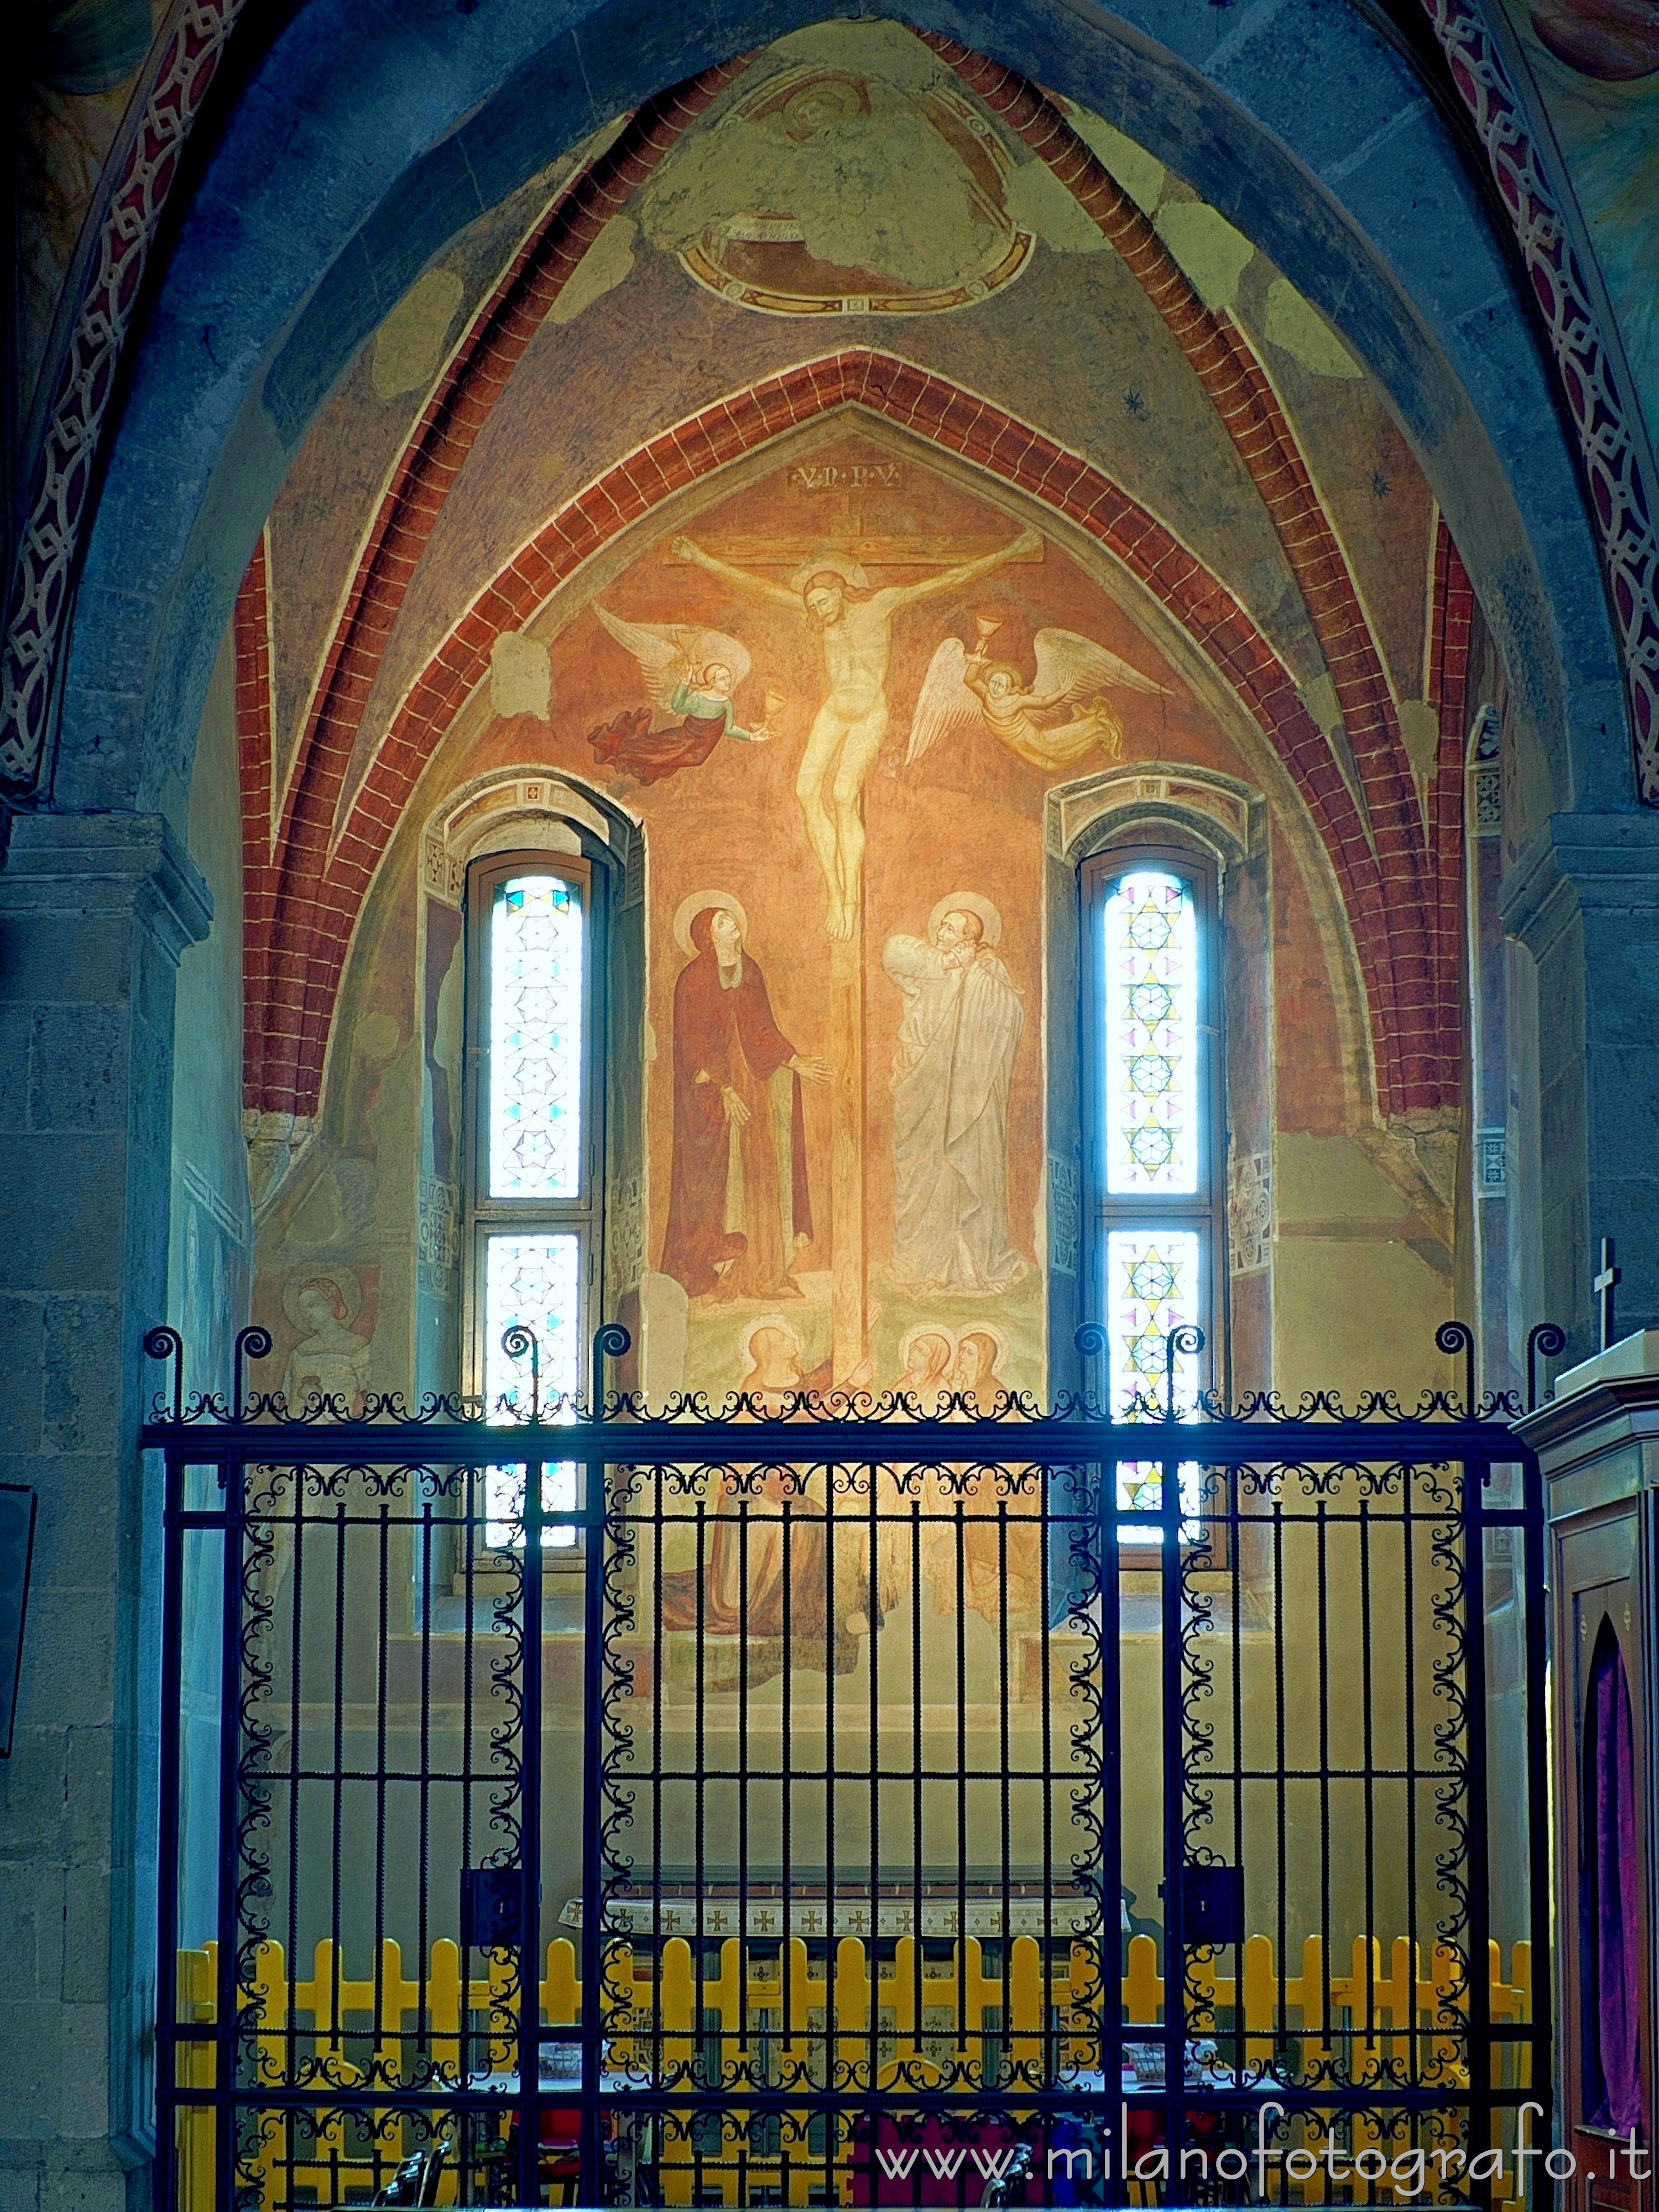 Trezzo sull'Adda (Milano): Cappella del Crocifisso nella Chiesa dei Santi Gervasio e Protasio - Trezzo sull'Adda (Milano)